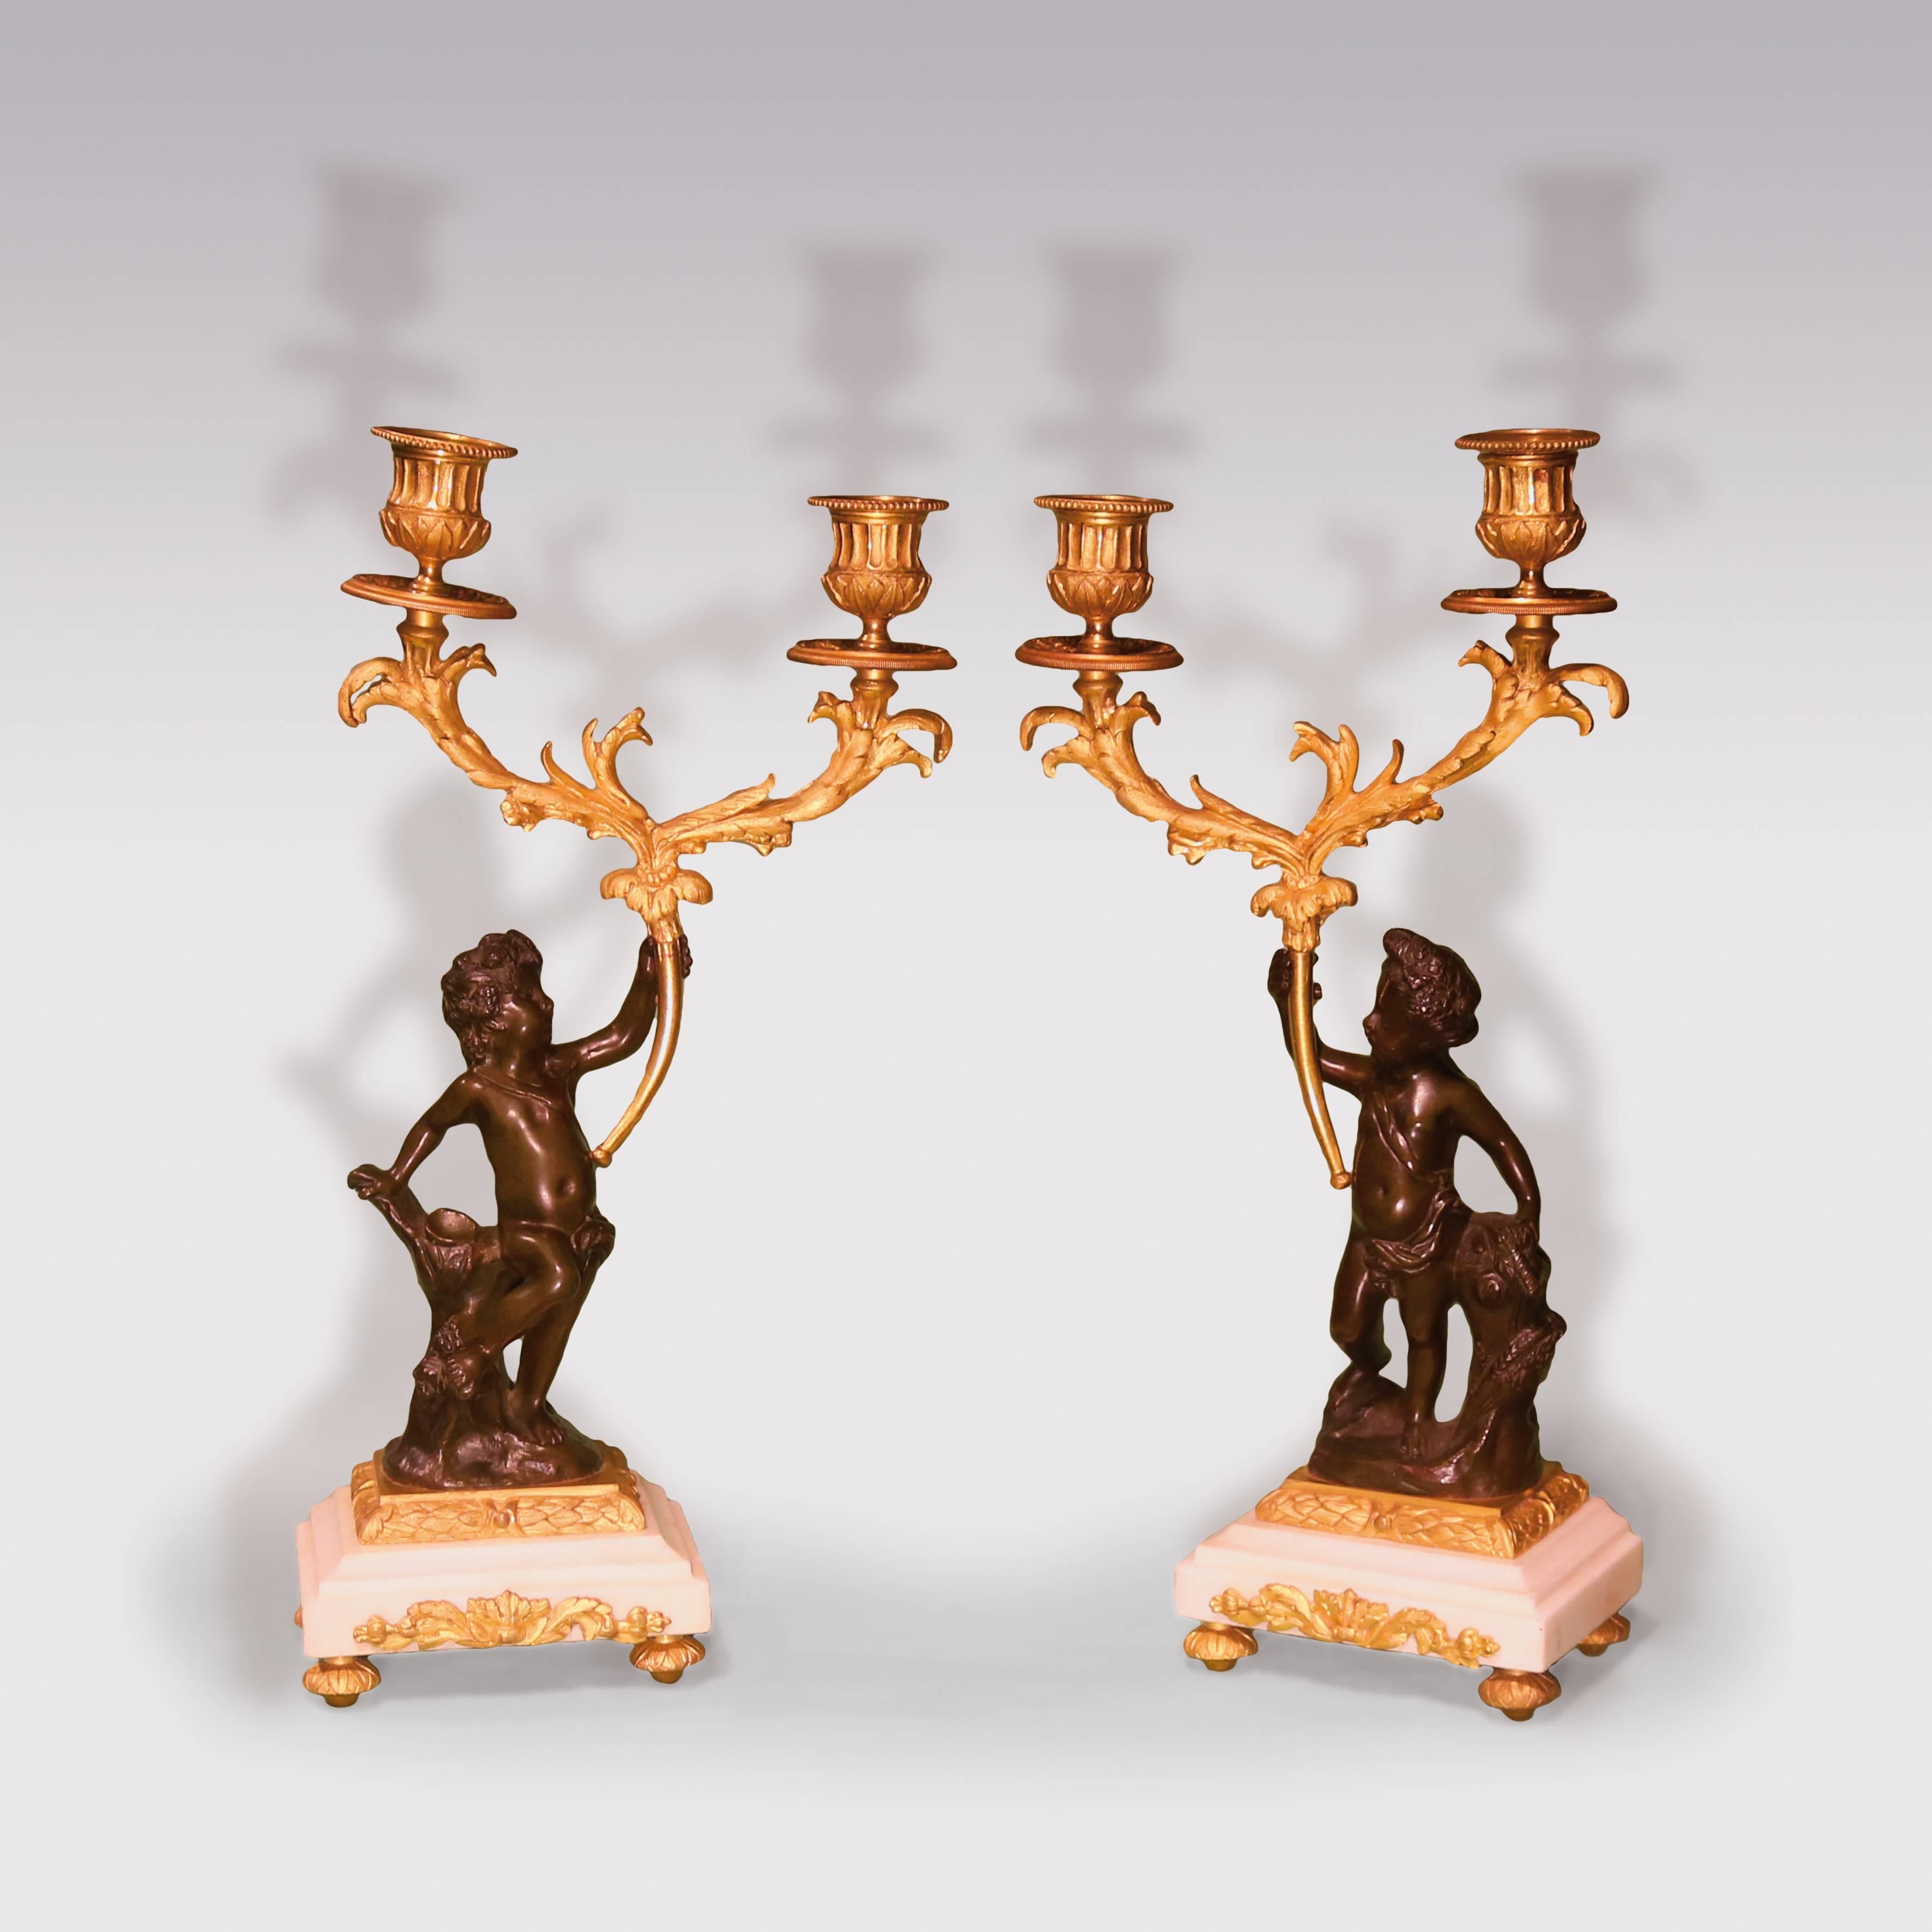 Garniture française de la fin du 19e siècle en bronze et bronze ciselé, le mouvement à cadran émaillé à sonnerie de 8 jours par AD Mougin - Paris, contenu dans une boîte en bronze ciselé avec un chérubin ailé en bronze écrivant sur un rouleau, se